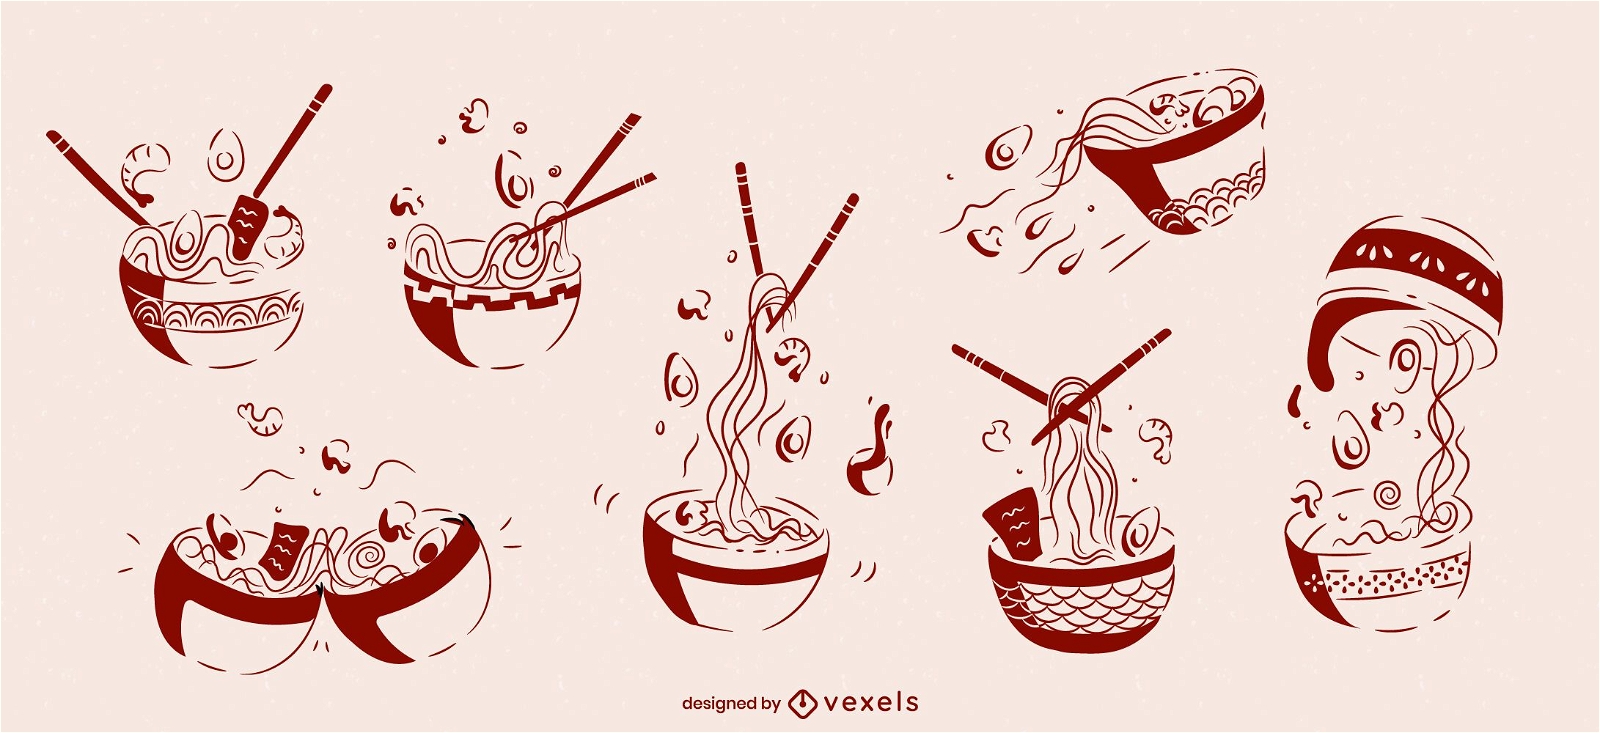 Juego de bocetos de comida japonesa de taz?n de ramen